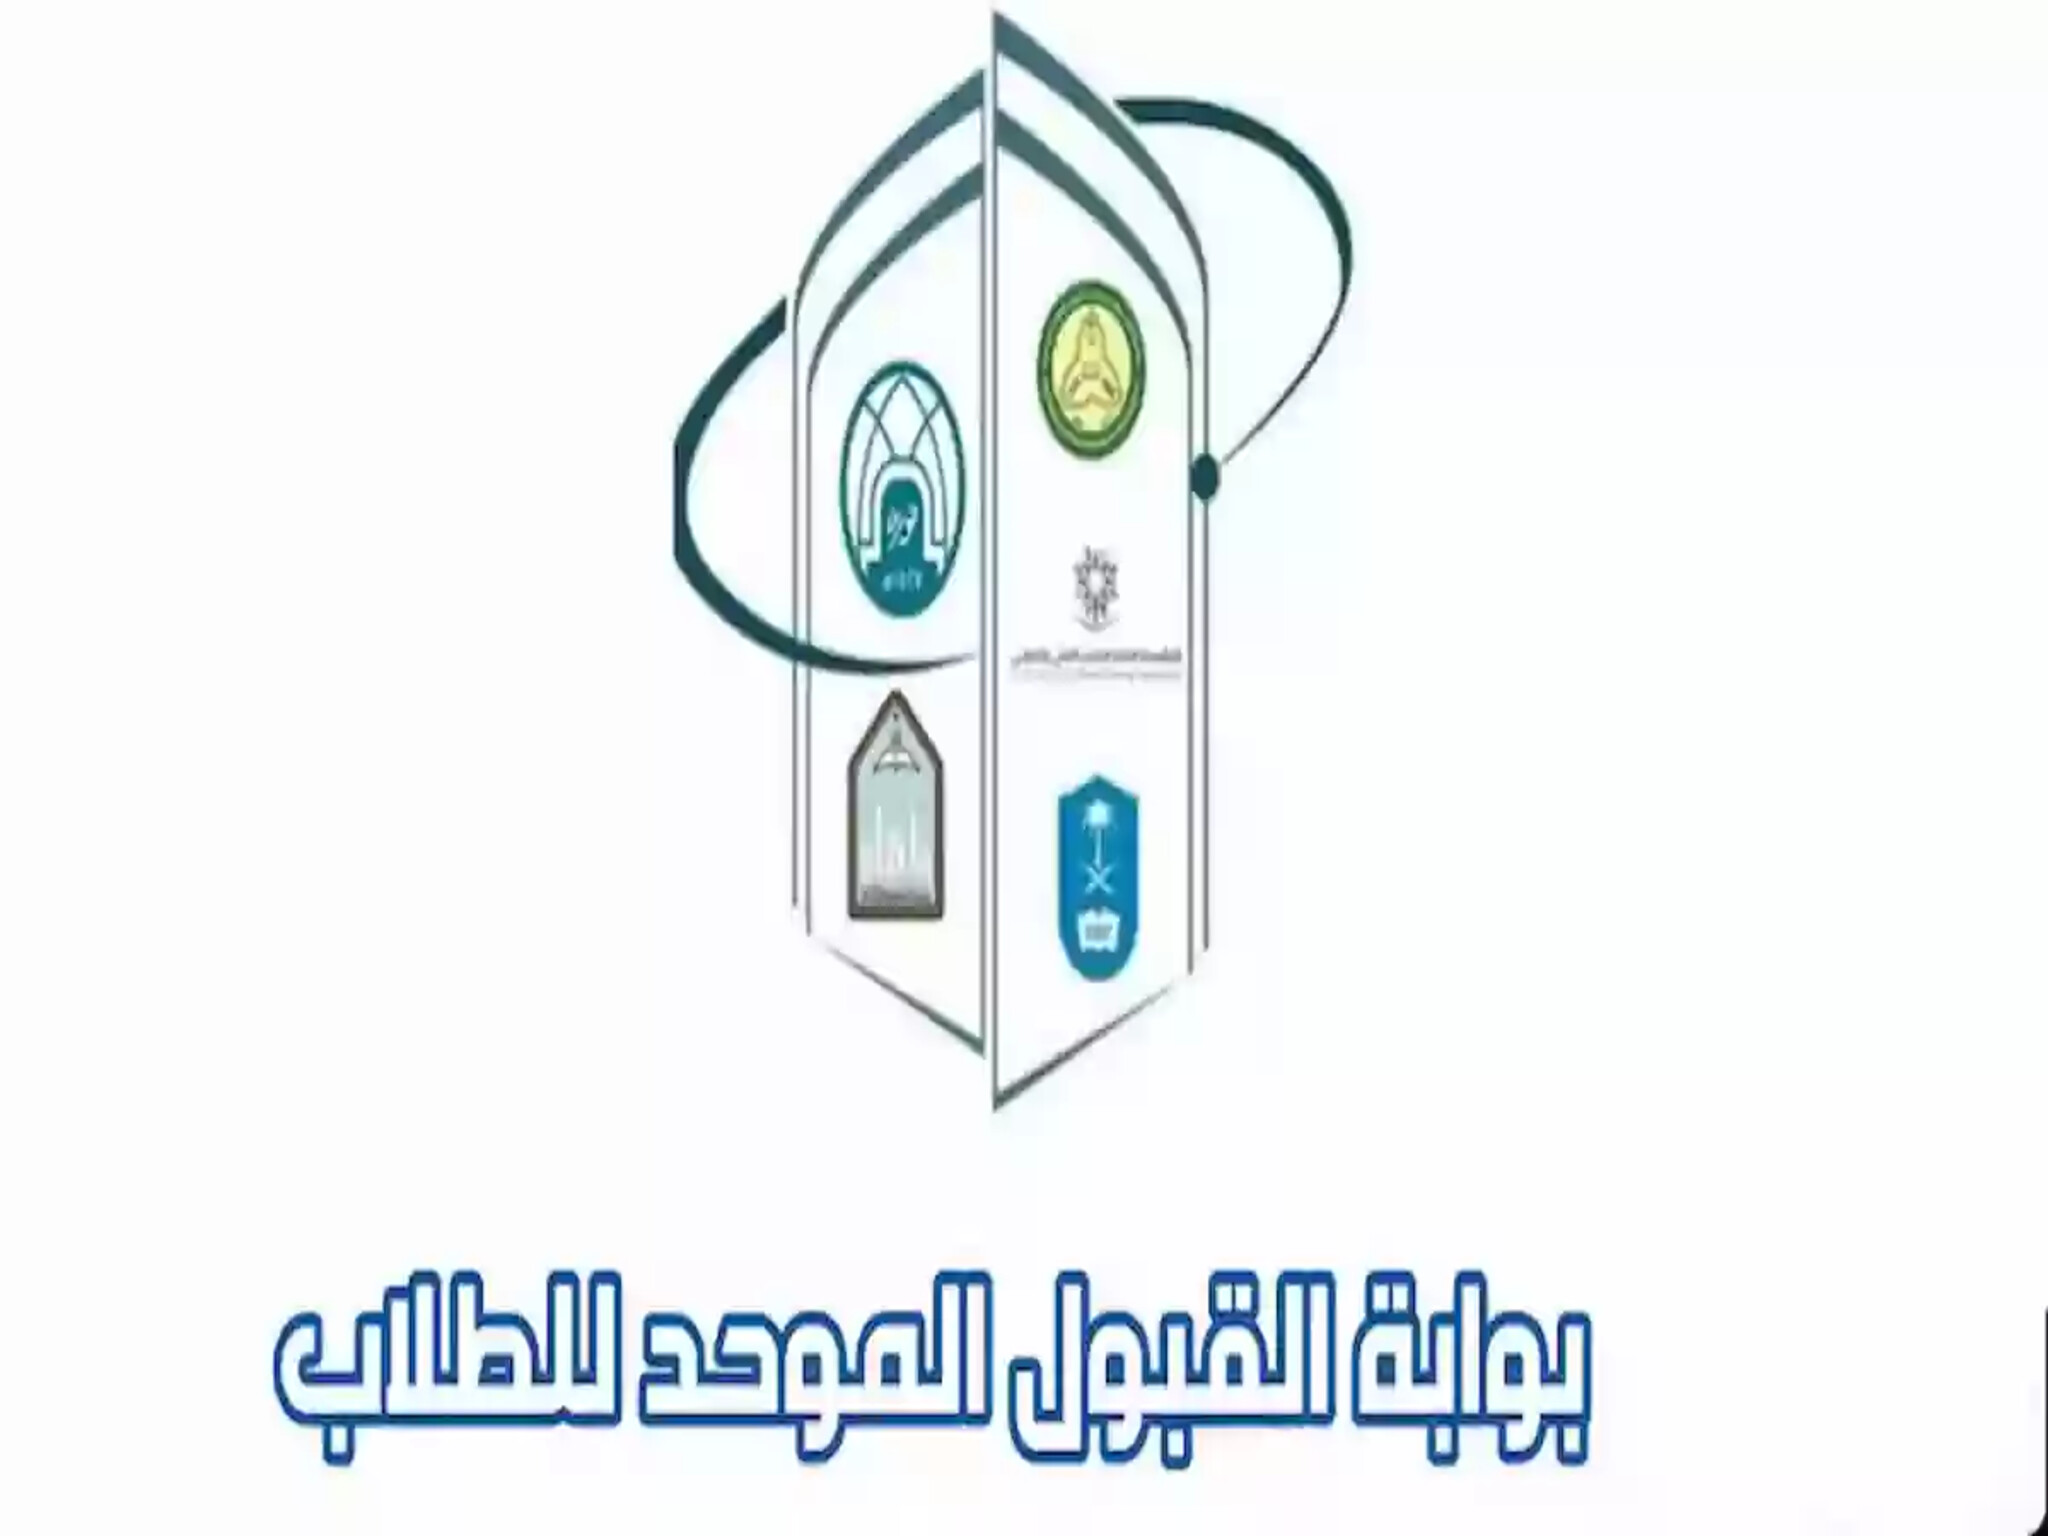 موعد التسجيل في الجامعات الحكومية والكليات التقنية 1446هـ بالمملكة السعودية